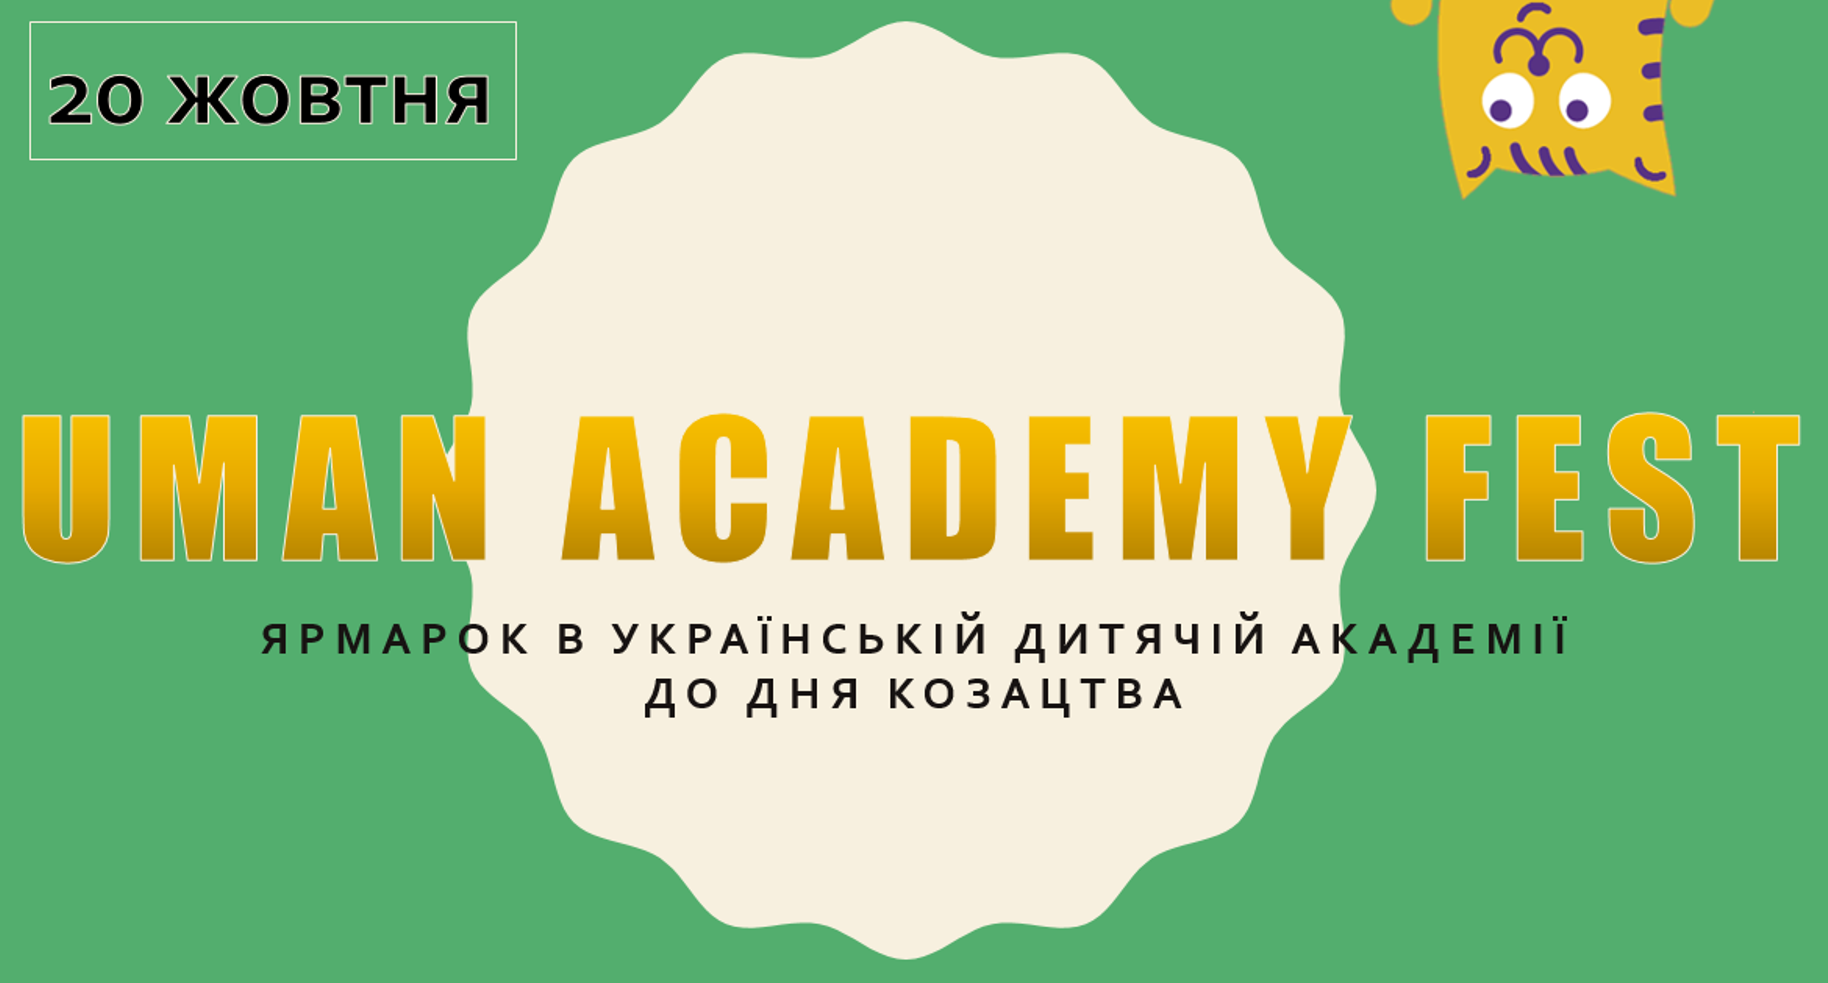 Українська дитяча академія запрошує дорослих та дітей 20 жовтня на ярмарок «Uman Academy Fest»!